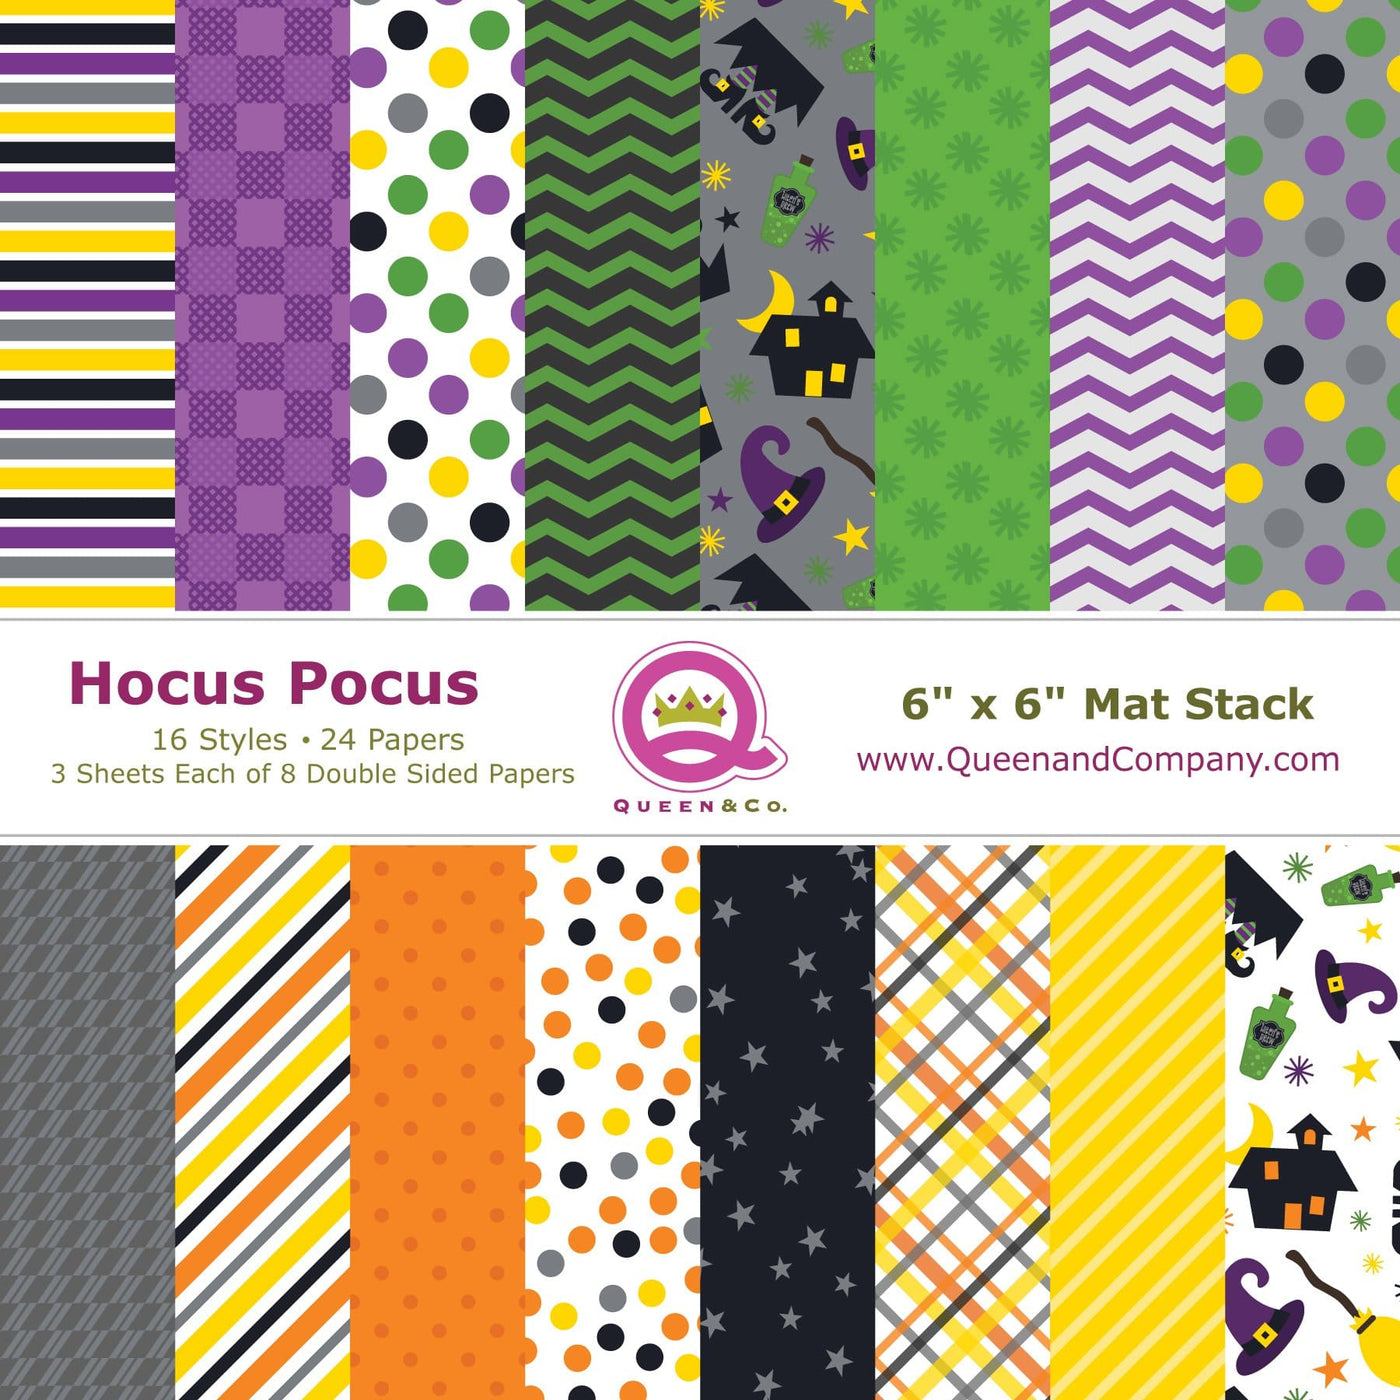 Hocus Pocus Paper Pad